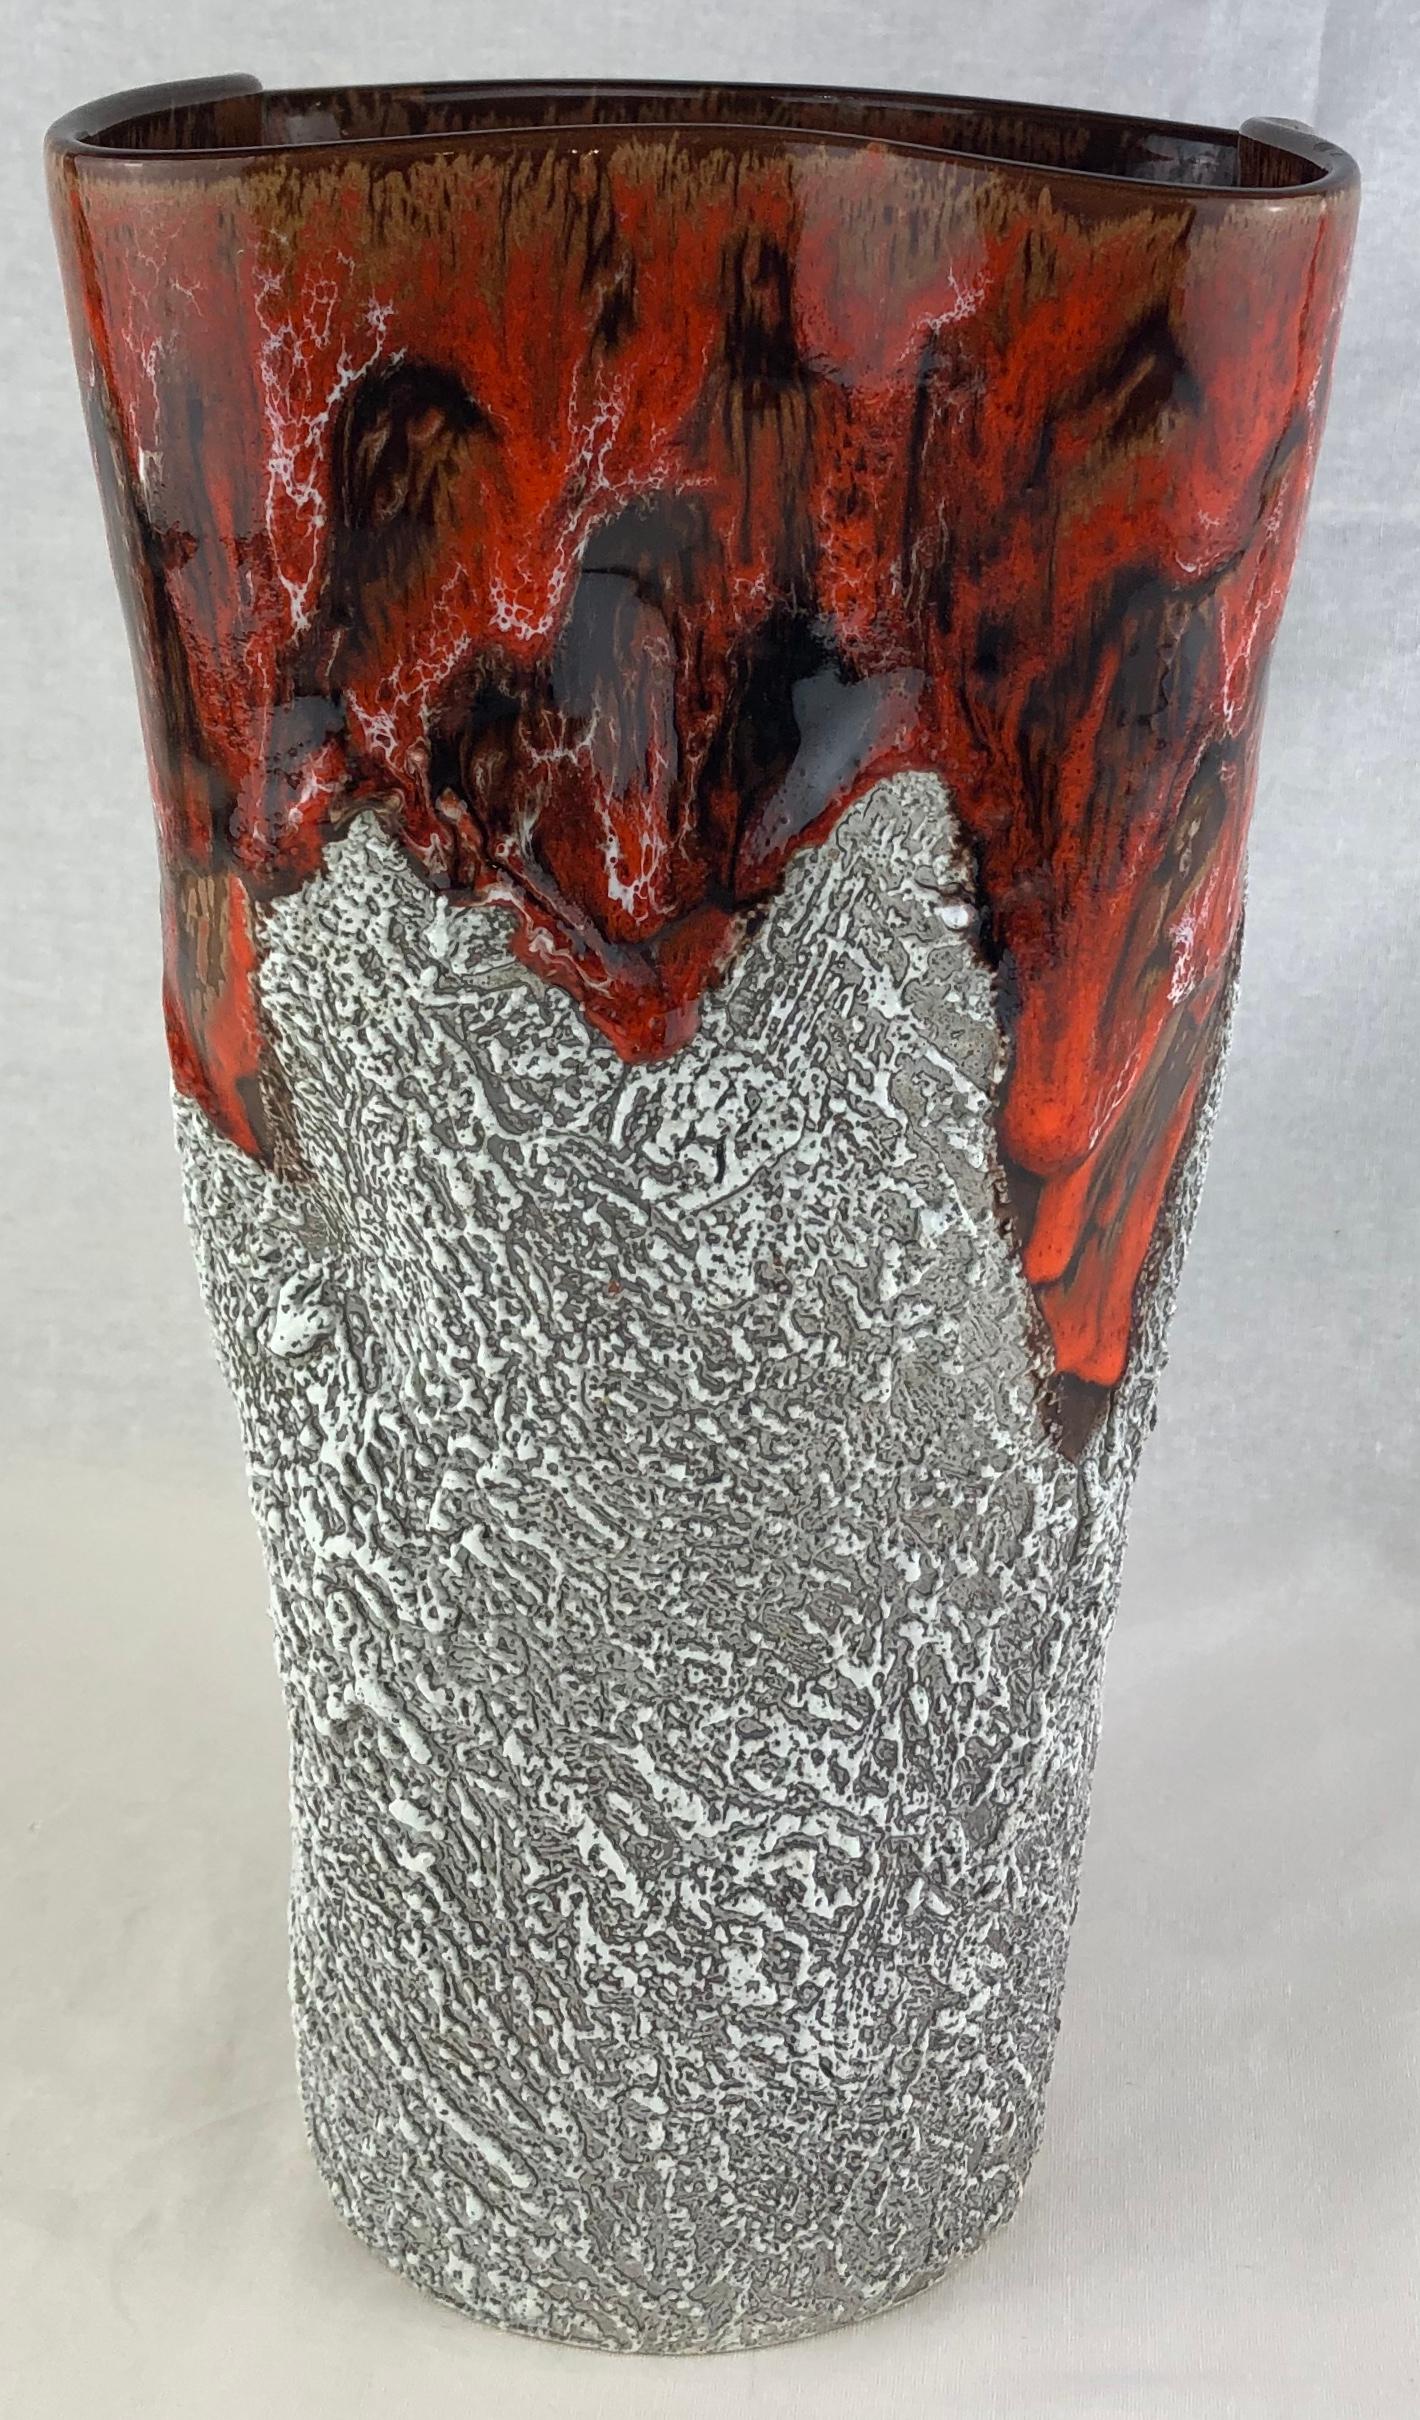 Magnifique vase en céramique de Vallauris, France, fabriqué et émaillé à la main. Le motif de style lave est placé sur un fond blanc avec des superpositions de teintes grises et brunes.

Circa 1950, conçu et réalisé à la manière des deux Charles